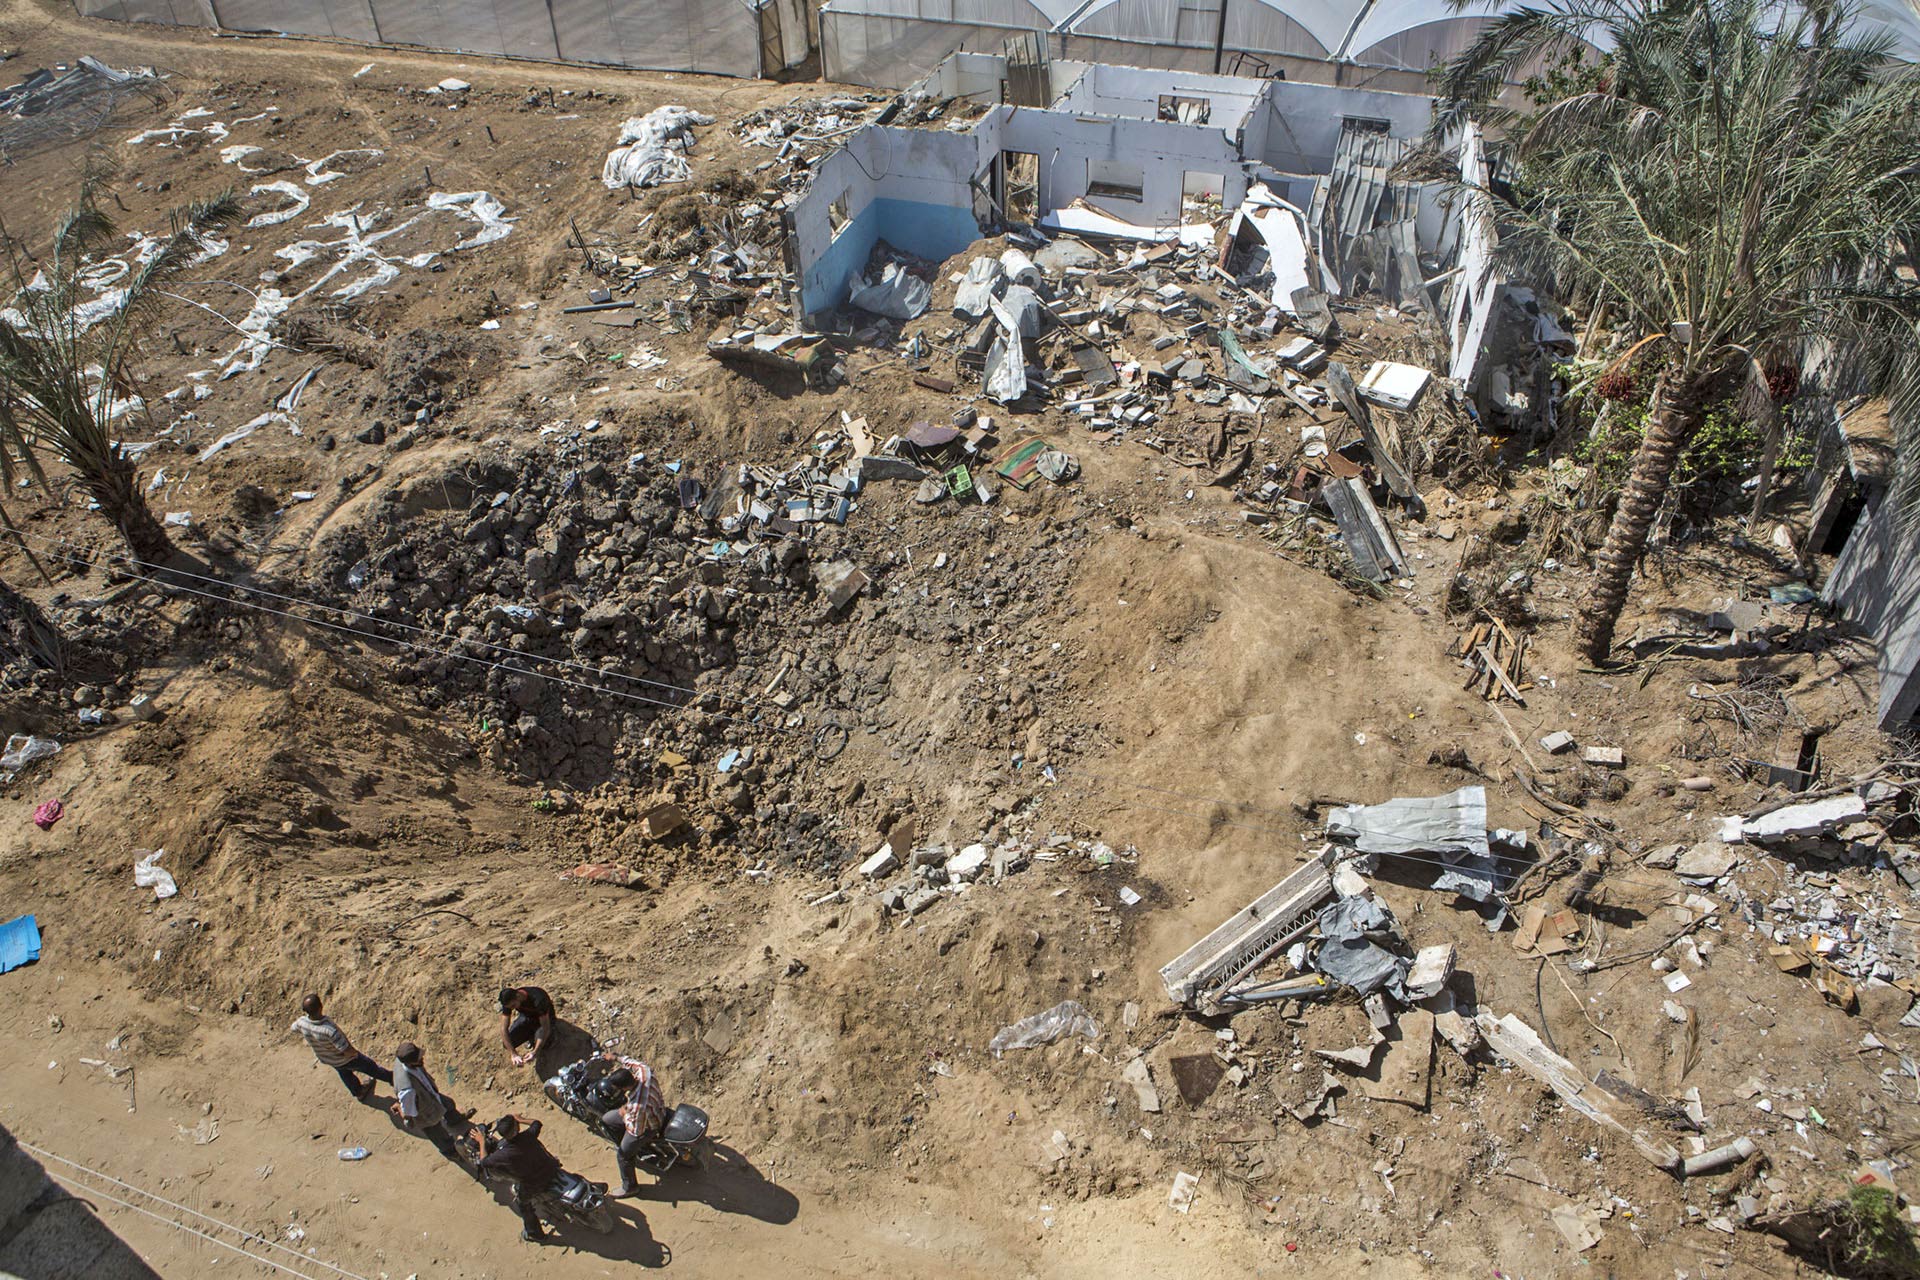 Siedem ciężarówek piasku nie wystarczyło, żeby zasypać krater po bombie, który powstał w miejscu domu Rafata.
